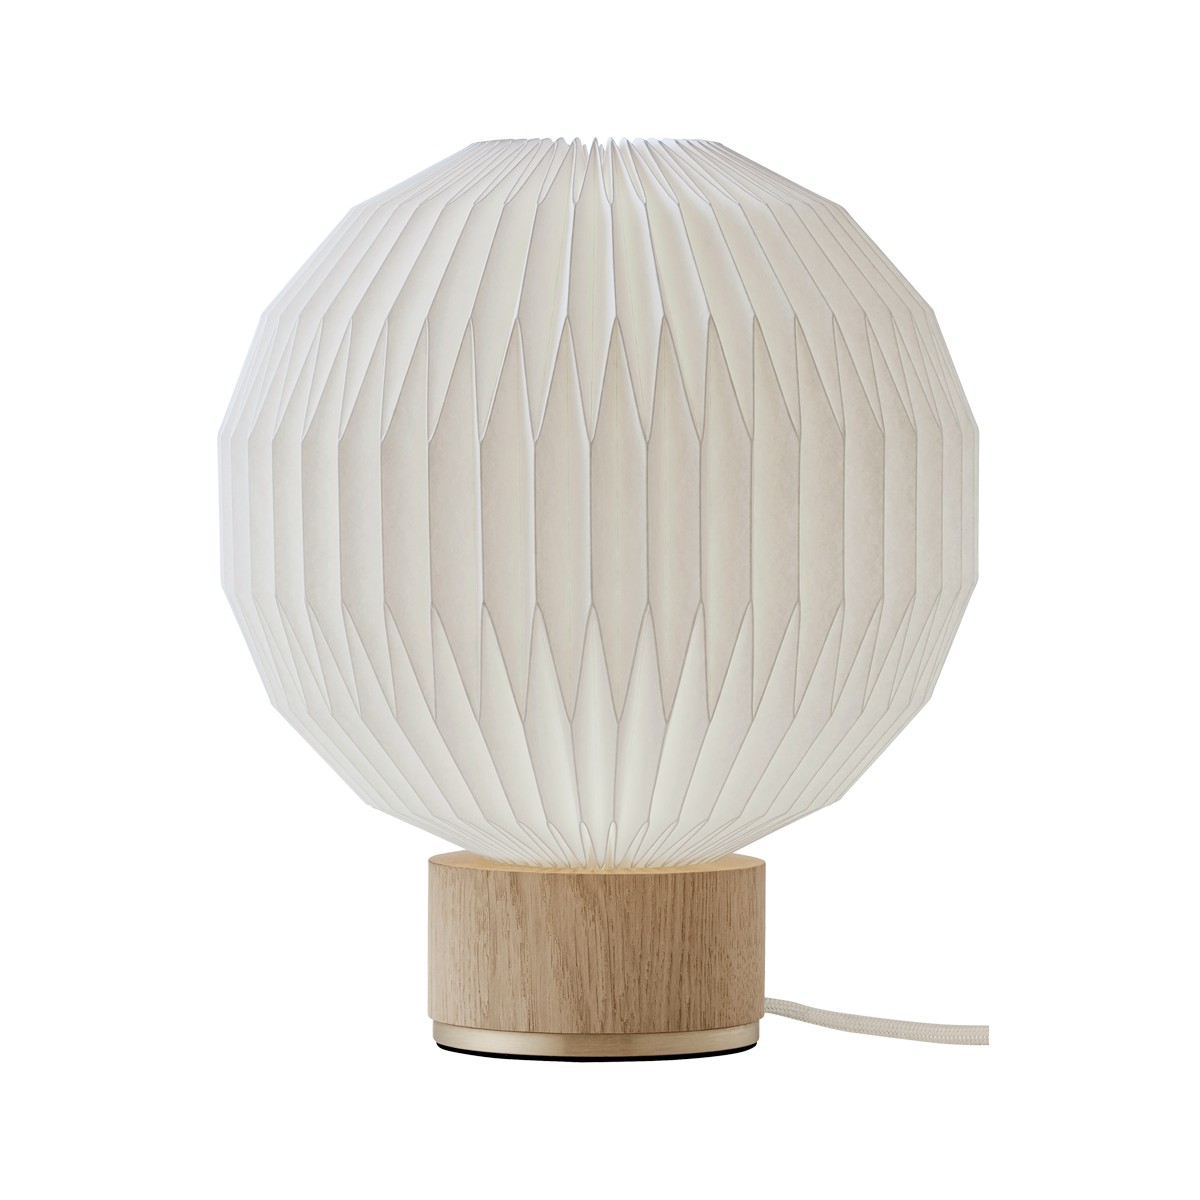 XS - light oak / paper shade - 375 table lamp